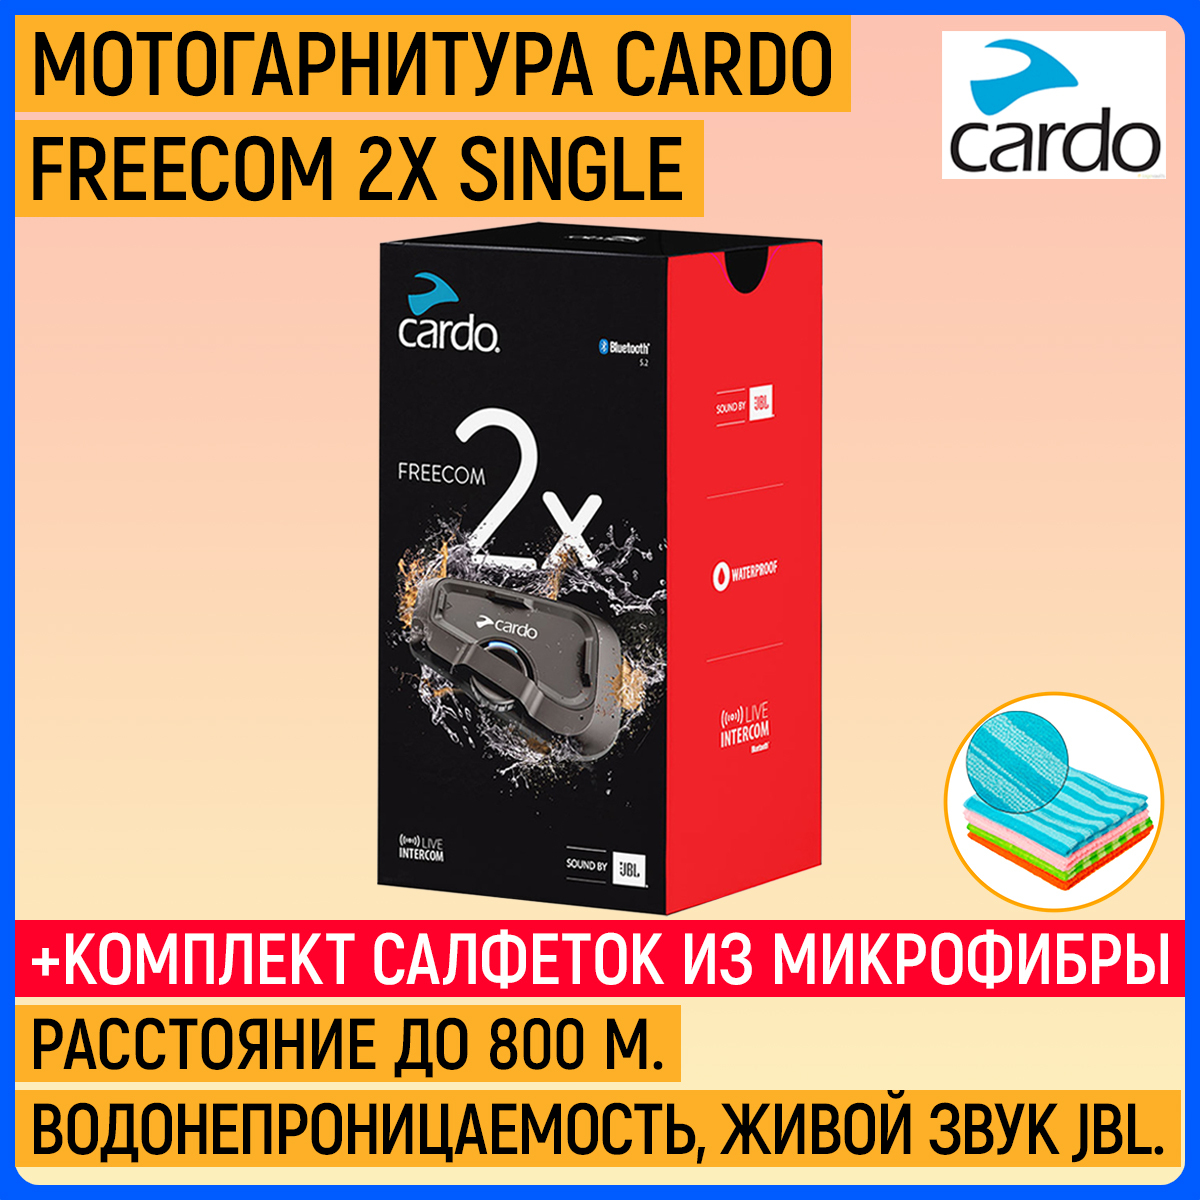 Cardo freecom 2X single